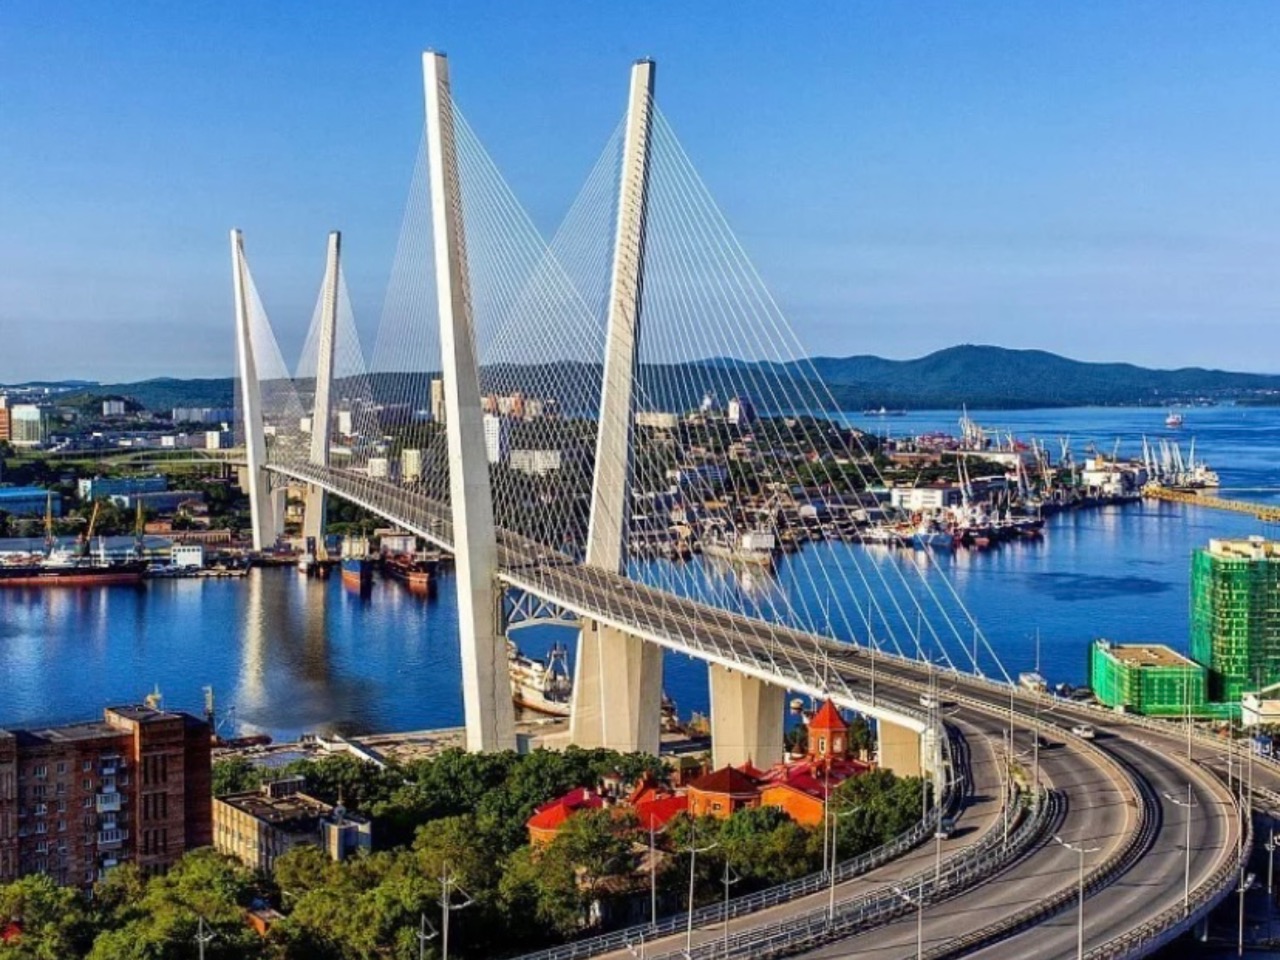 Самые фотогеничные локации Владивостока | Цена 11000₽, отзывы, описание экскурсии